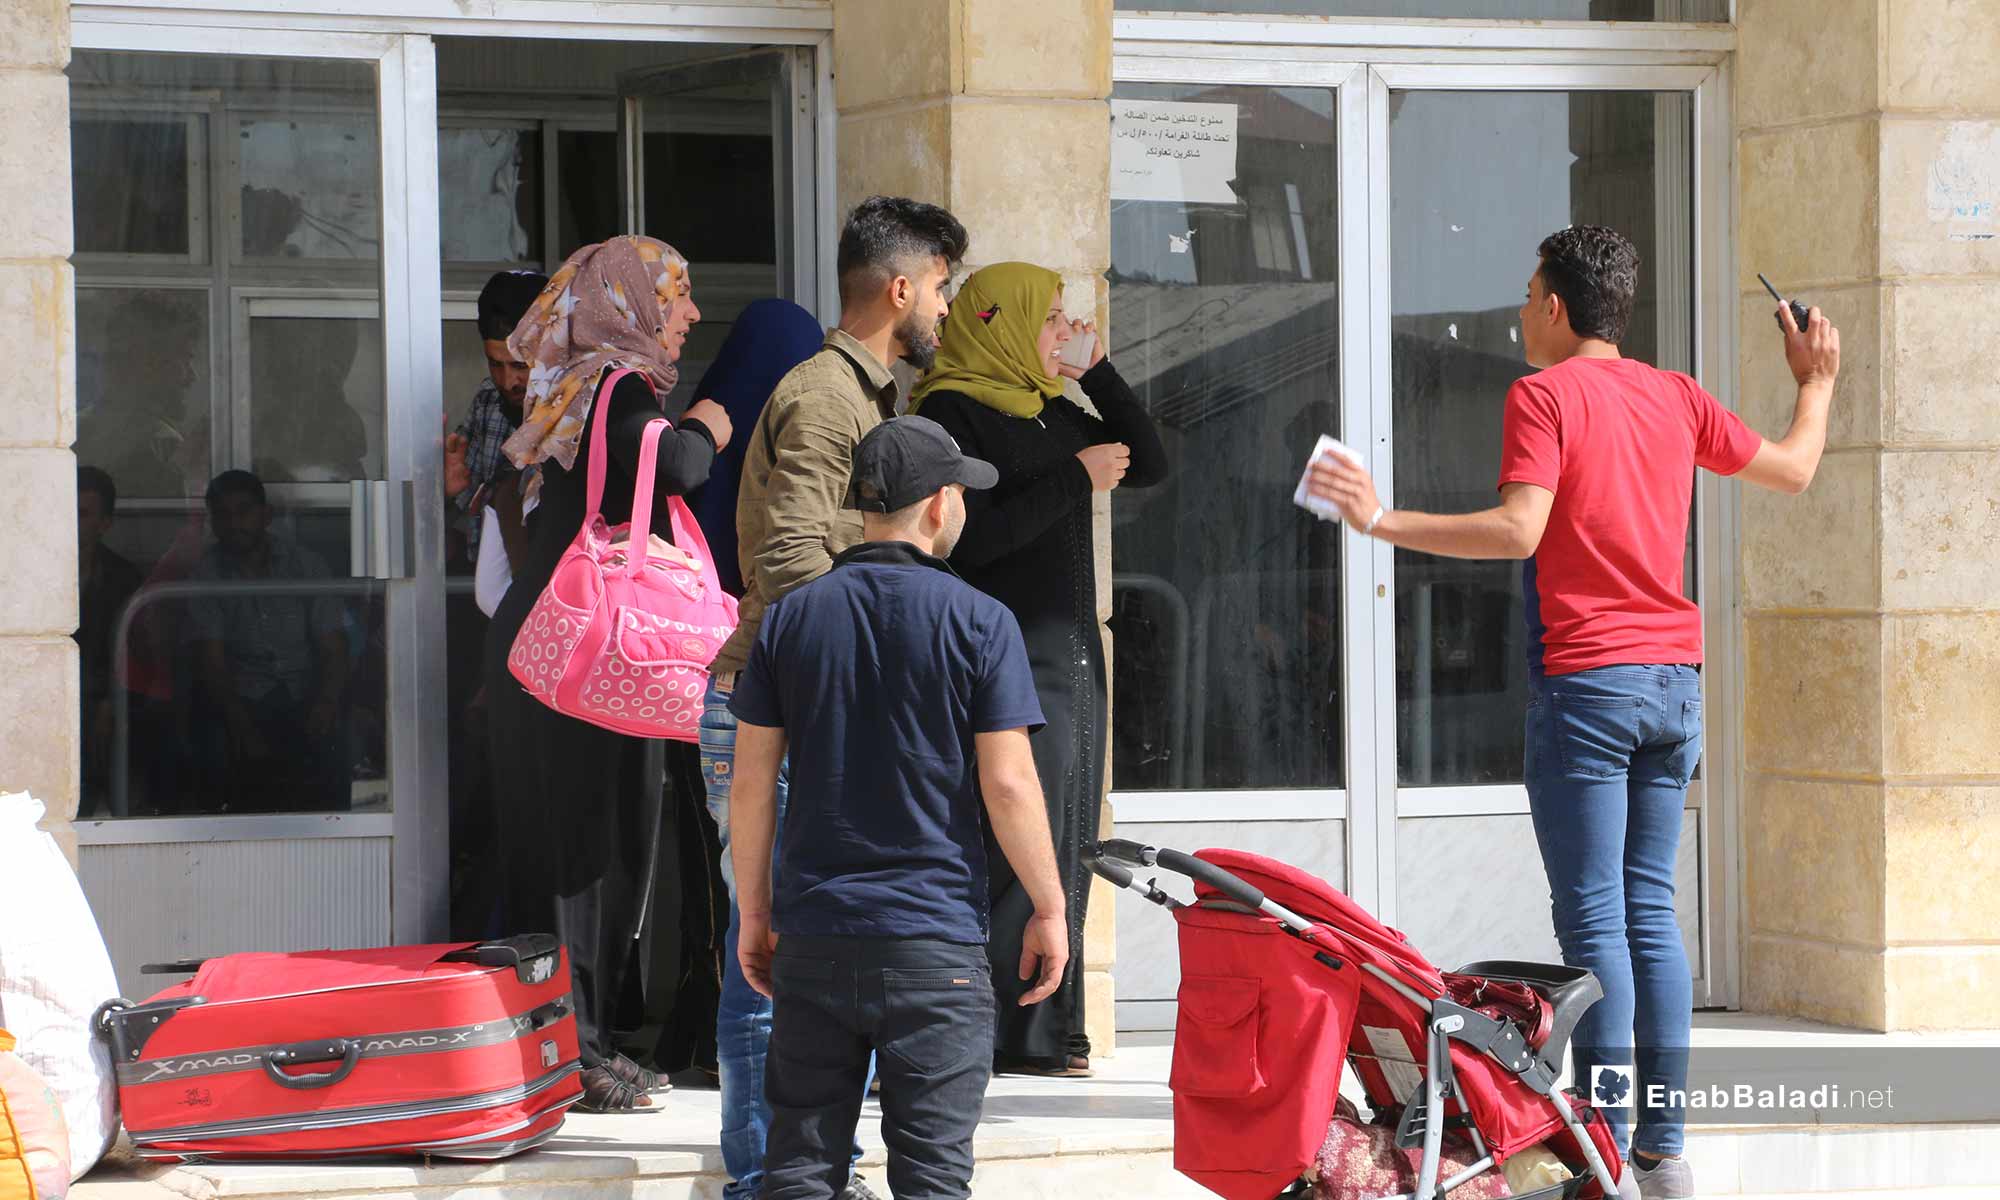 توافد السوريين من تركيا لقضاء إجازة العيد في سوريا عبر معبر باب السلامة الحدودي - 21 من أيار 2019 (عنب بلدي)